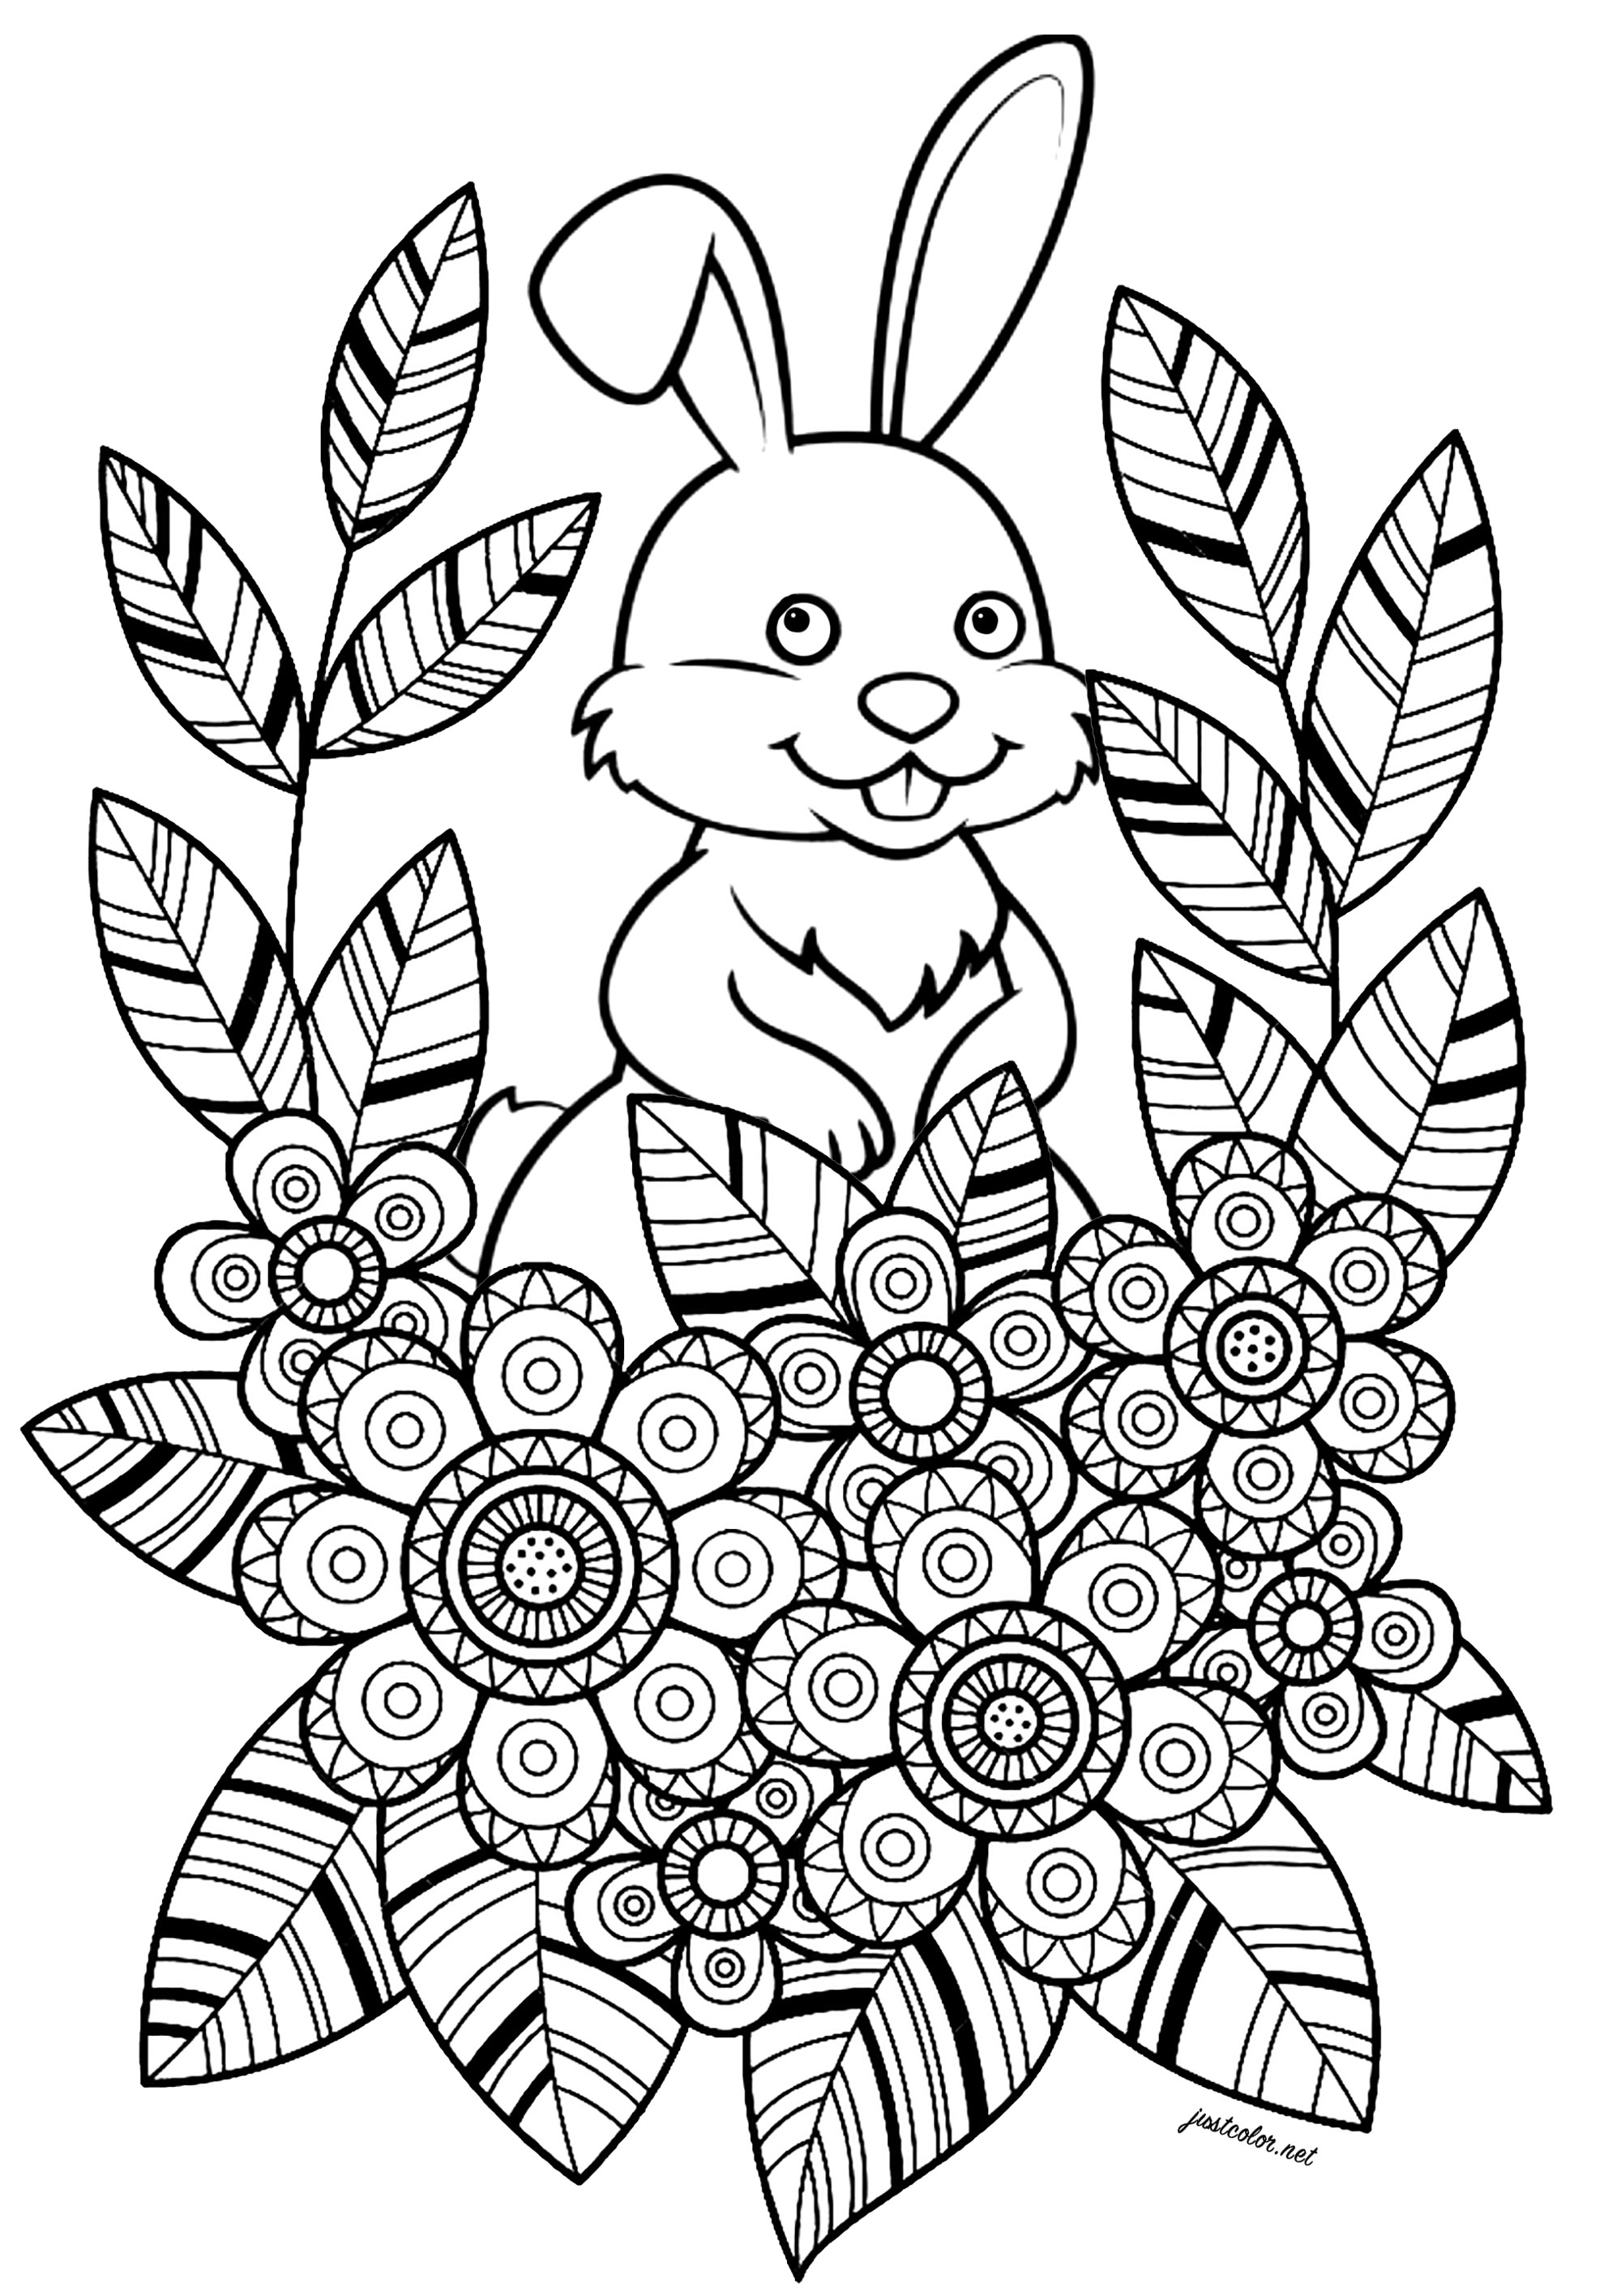 Coniglio con fiori e foglie in un grazioso disegno. Questa semplice e affascinante pagina da colorare presenta un coniglio bianco che si nasconde dietro a fiori e foglie. I fiori e le foglie sono disegnati in uno stile molto facile da colorare, con aree ben definite e bei disegni.